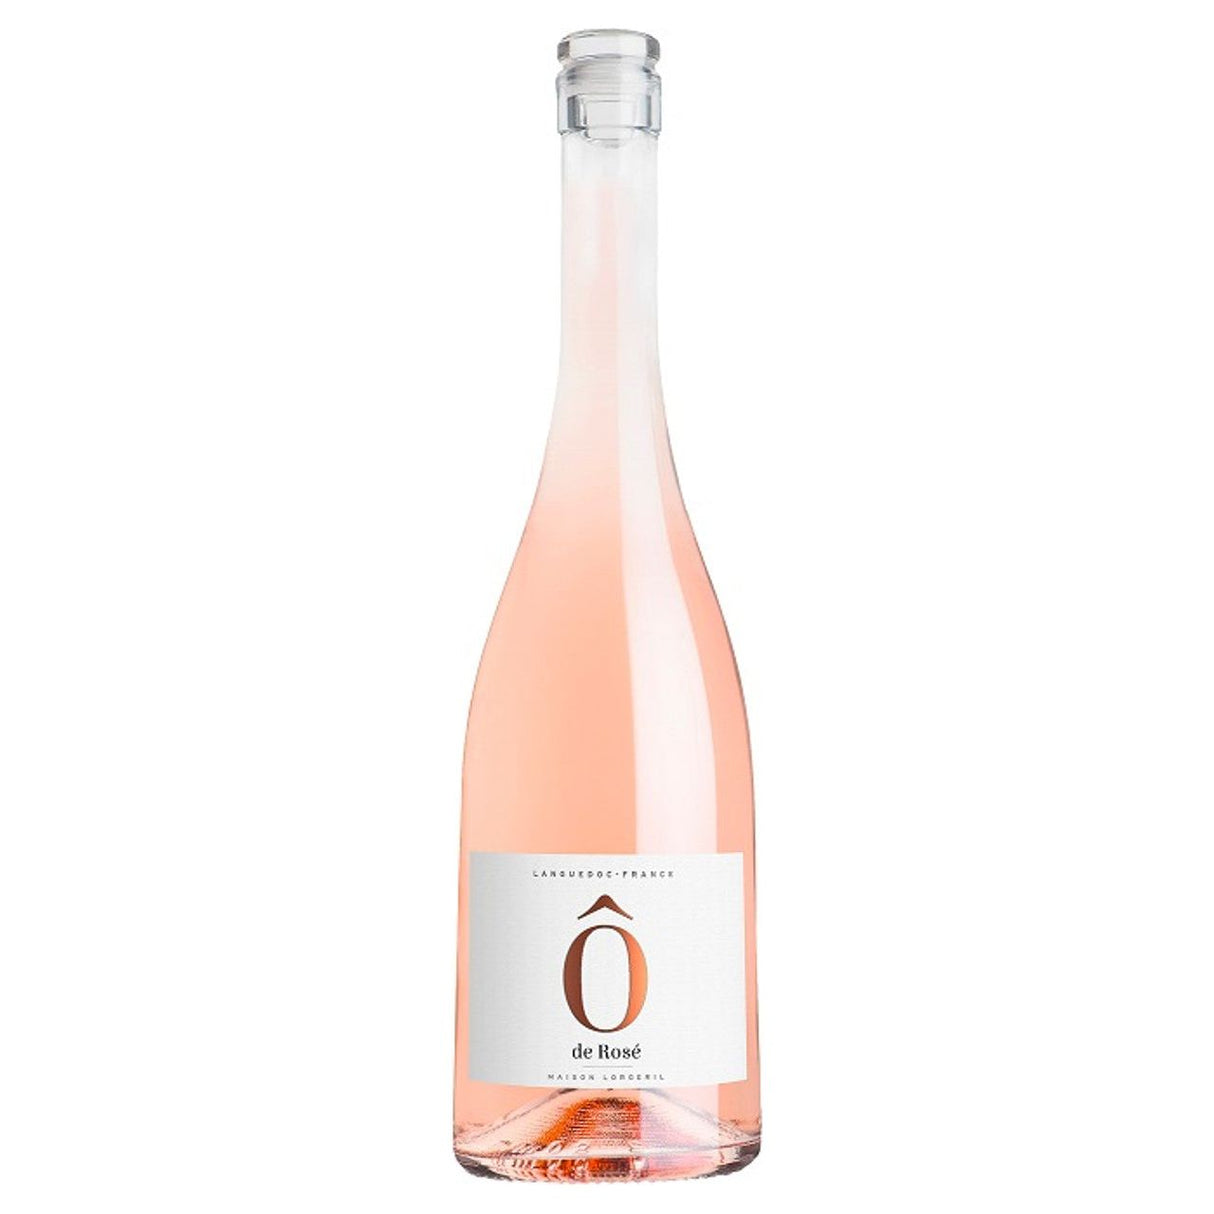 Maison Lorgeril Ô de Rosé, AOP Languedoc,  FR 2021 (12 bottles)